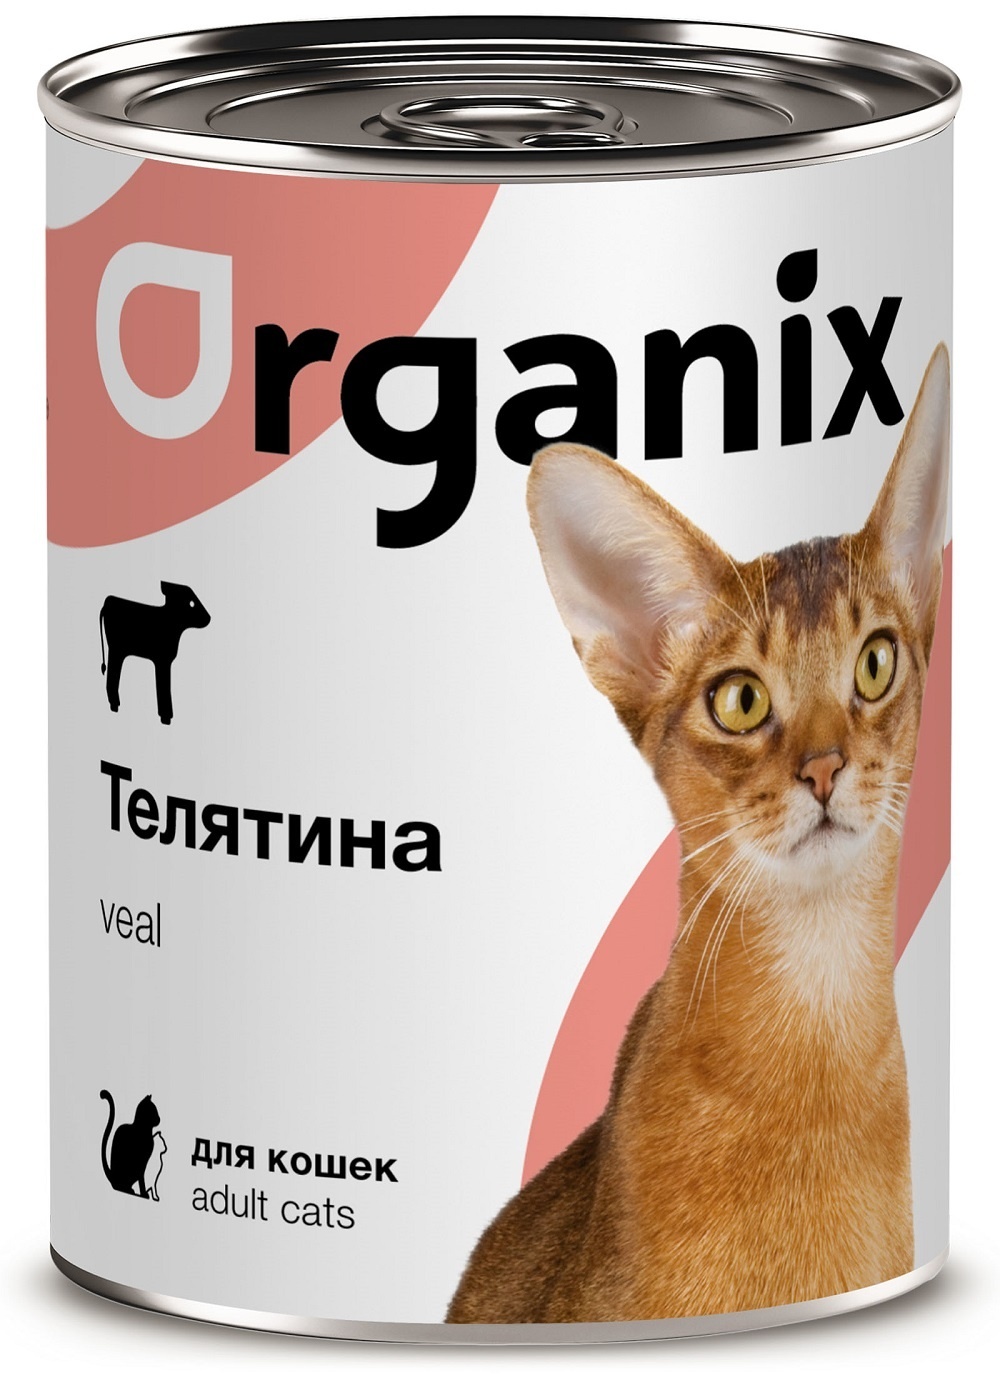 Organix консервы Organix консервы с телятиной для кошек (100 г) organix консервы organix консервы для собак телятина с зеленой фасолью 100 г